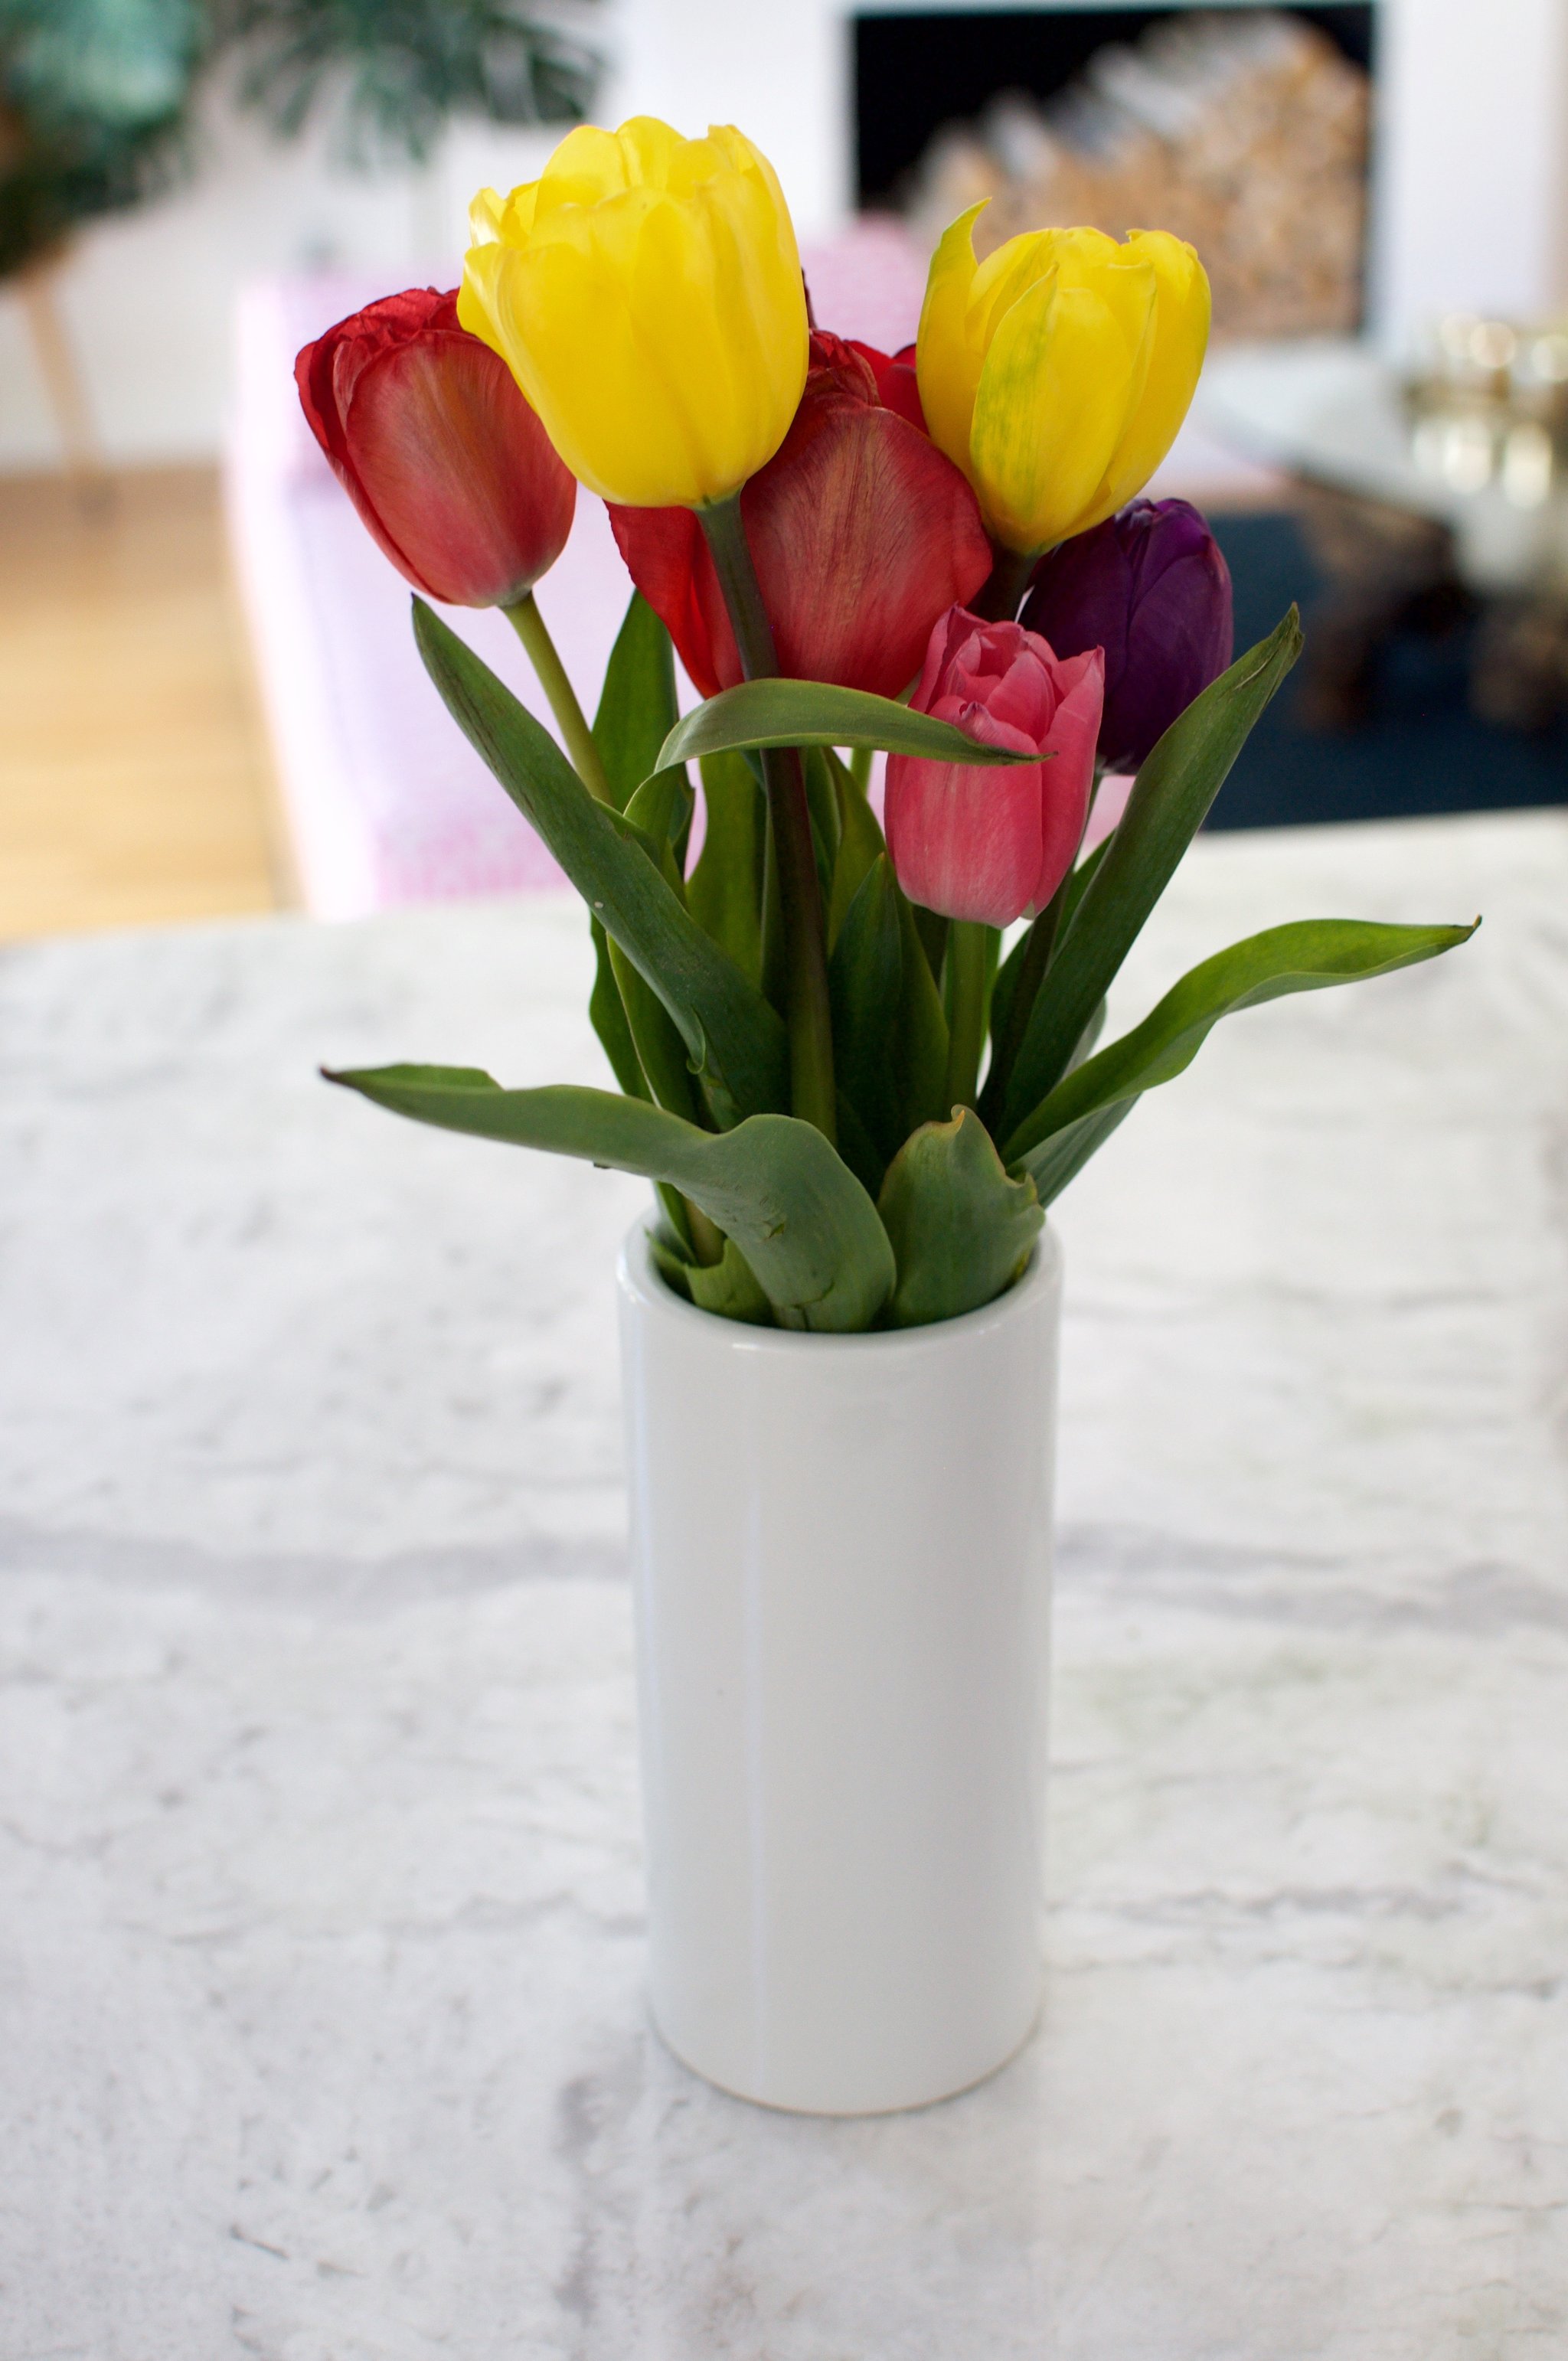 Ezzel a trükkel egy hétig is frissen tarthatod a tulipánt